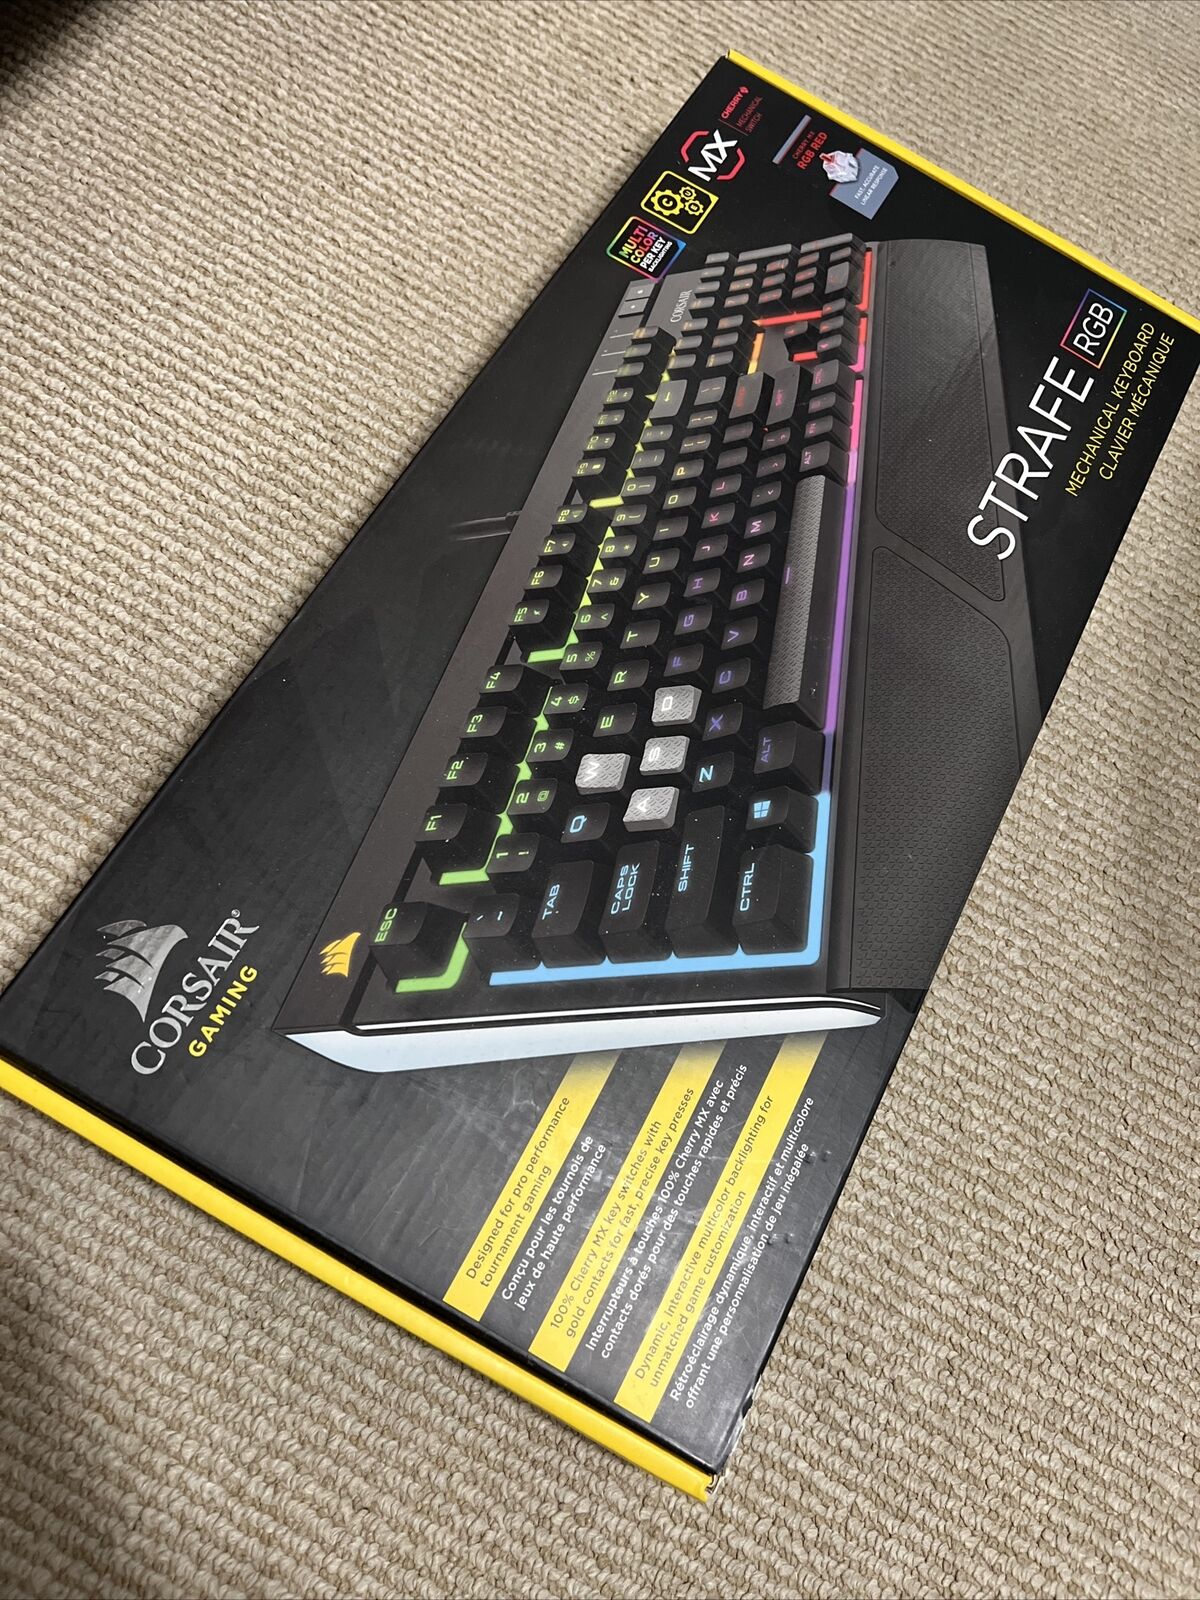 Corsair RGP0018 Strafe RGB Mechanical Gaming Keyboard